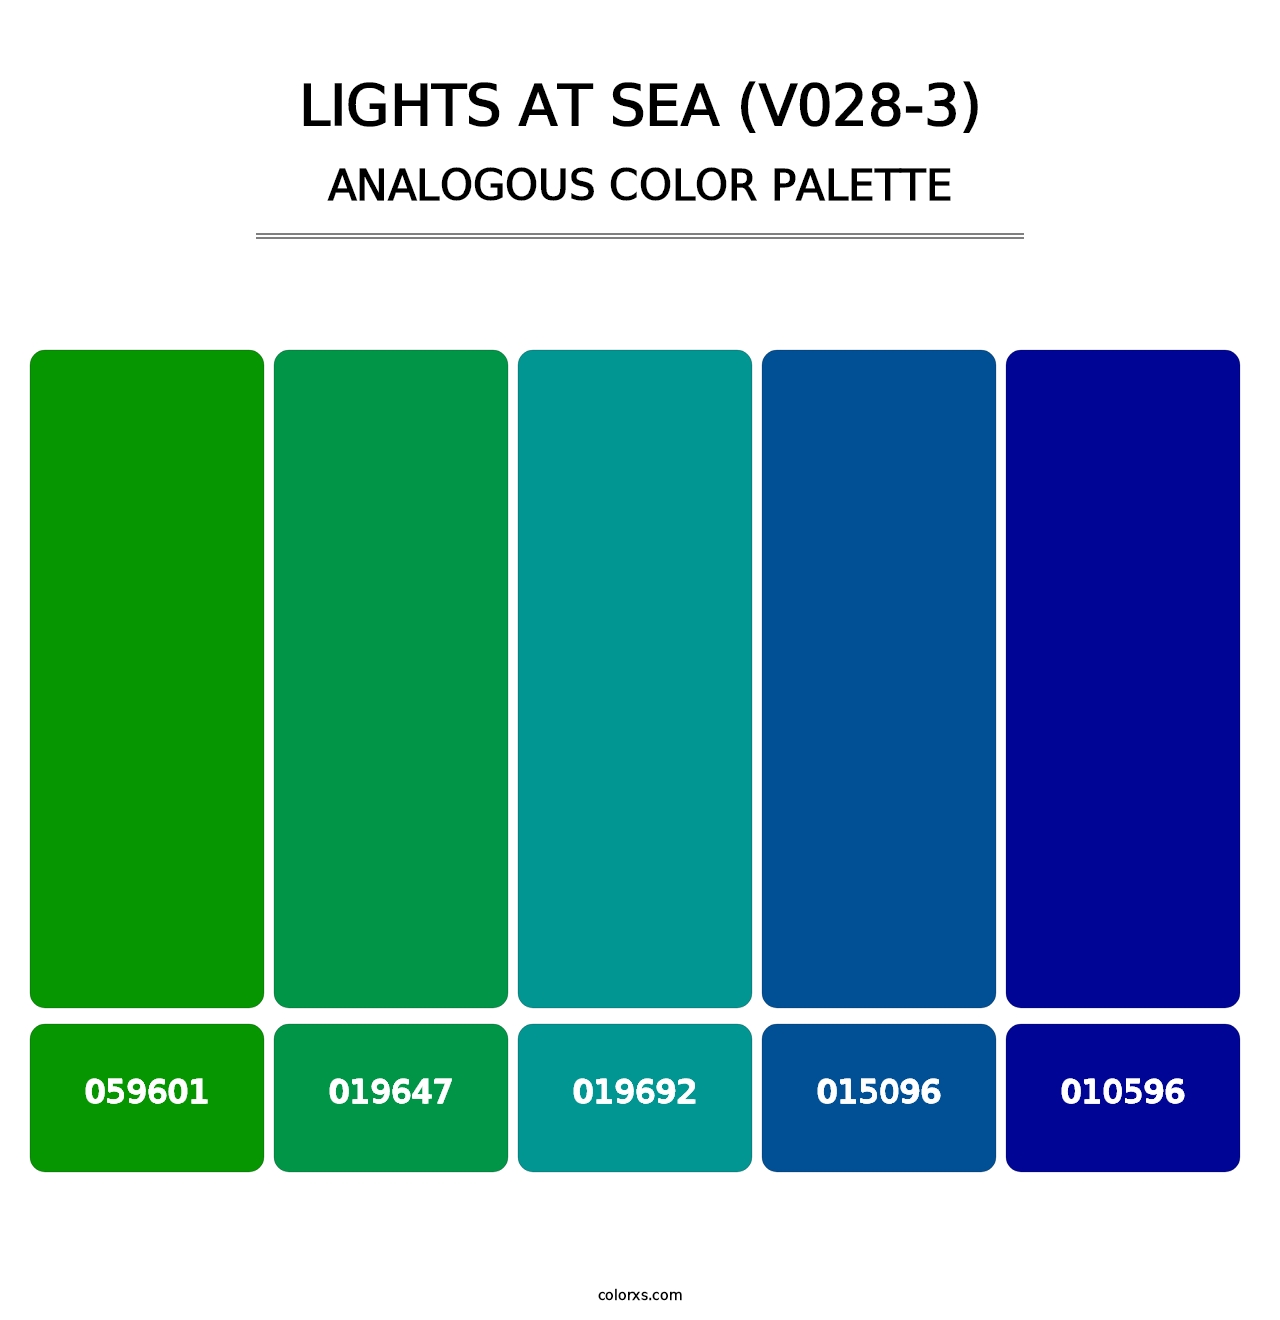 Lights at Sea (V028-3) - Analogous Color Palette